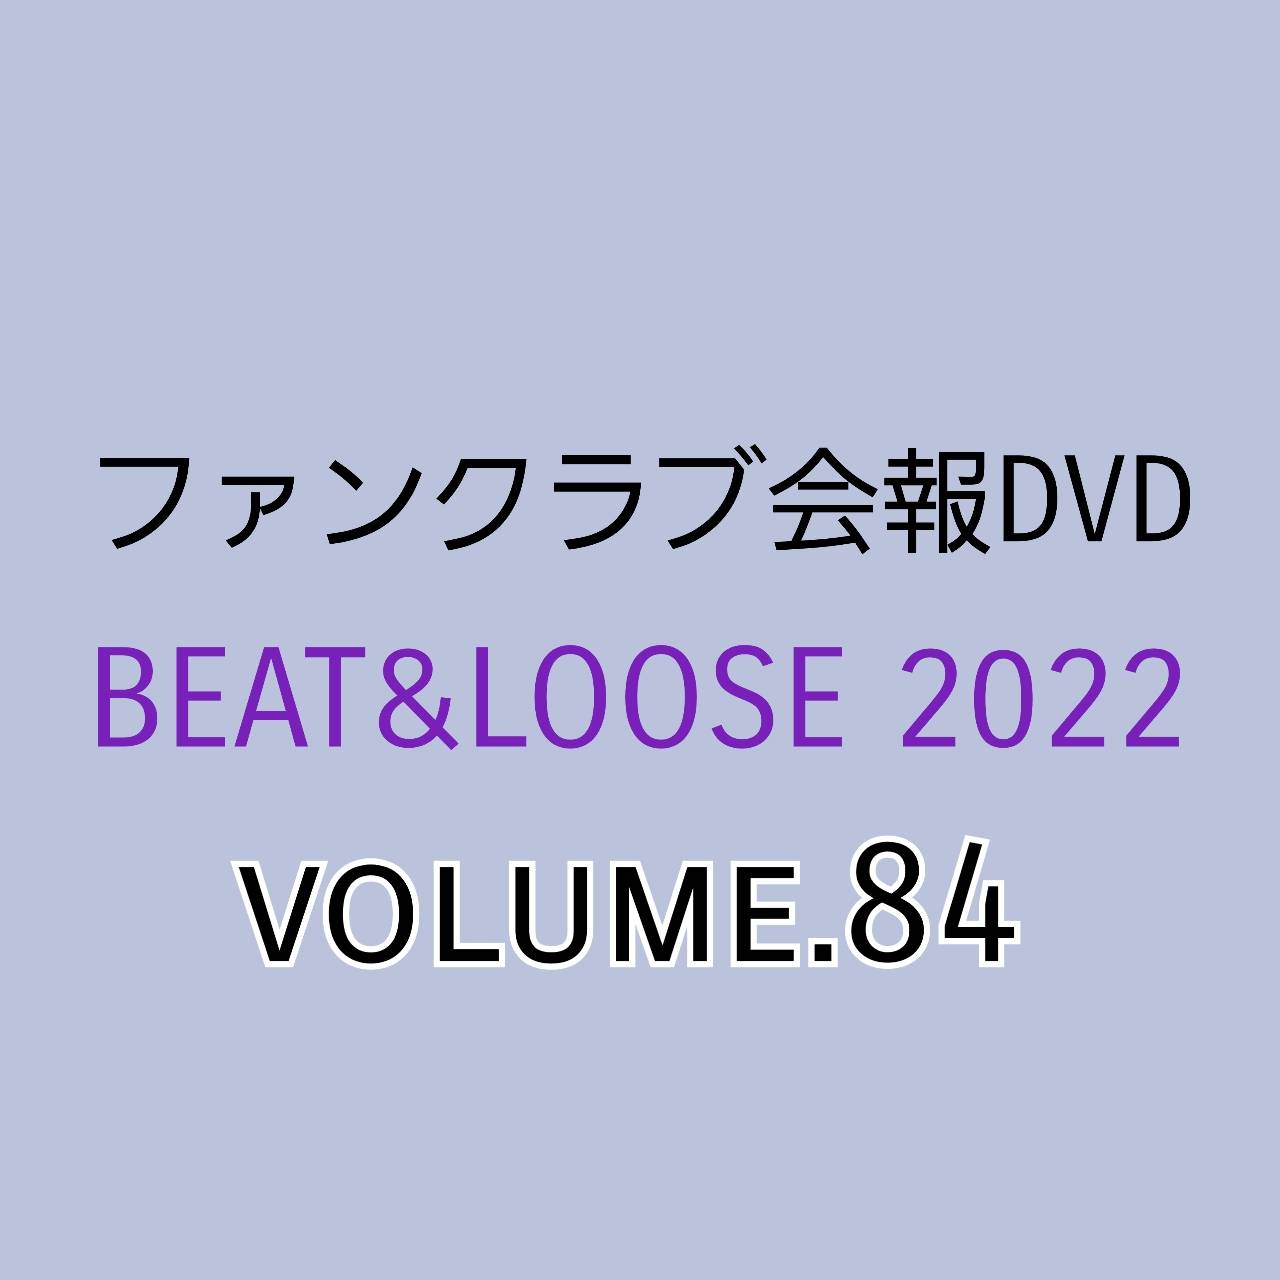 【会報DVD】BEAT&LOOSE 2022 volume.84 バックオーダー（FC会員限定）